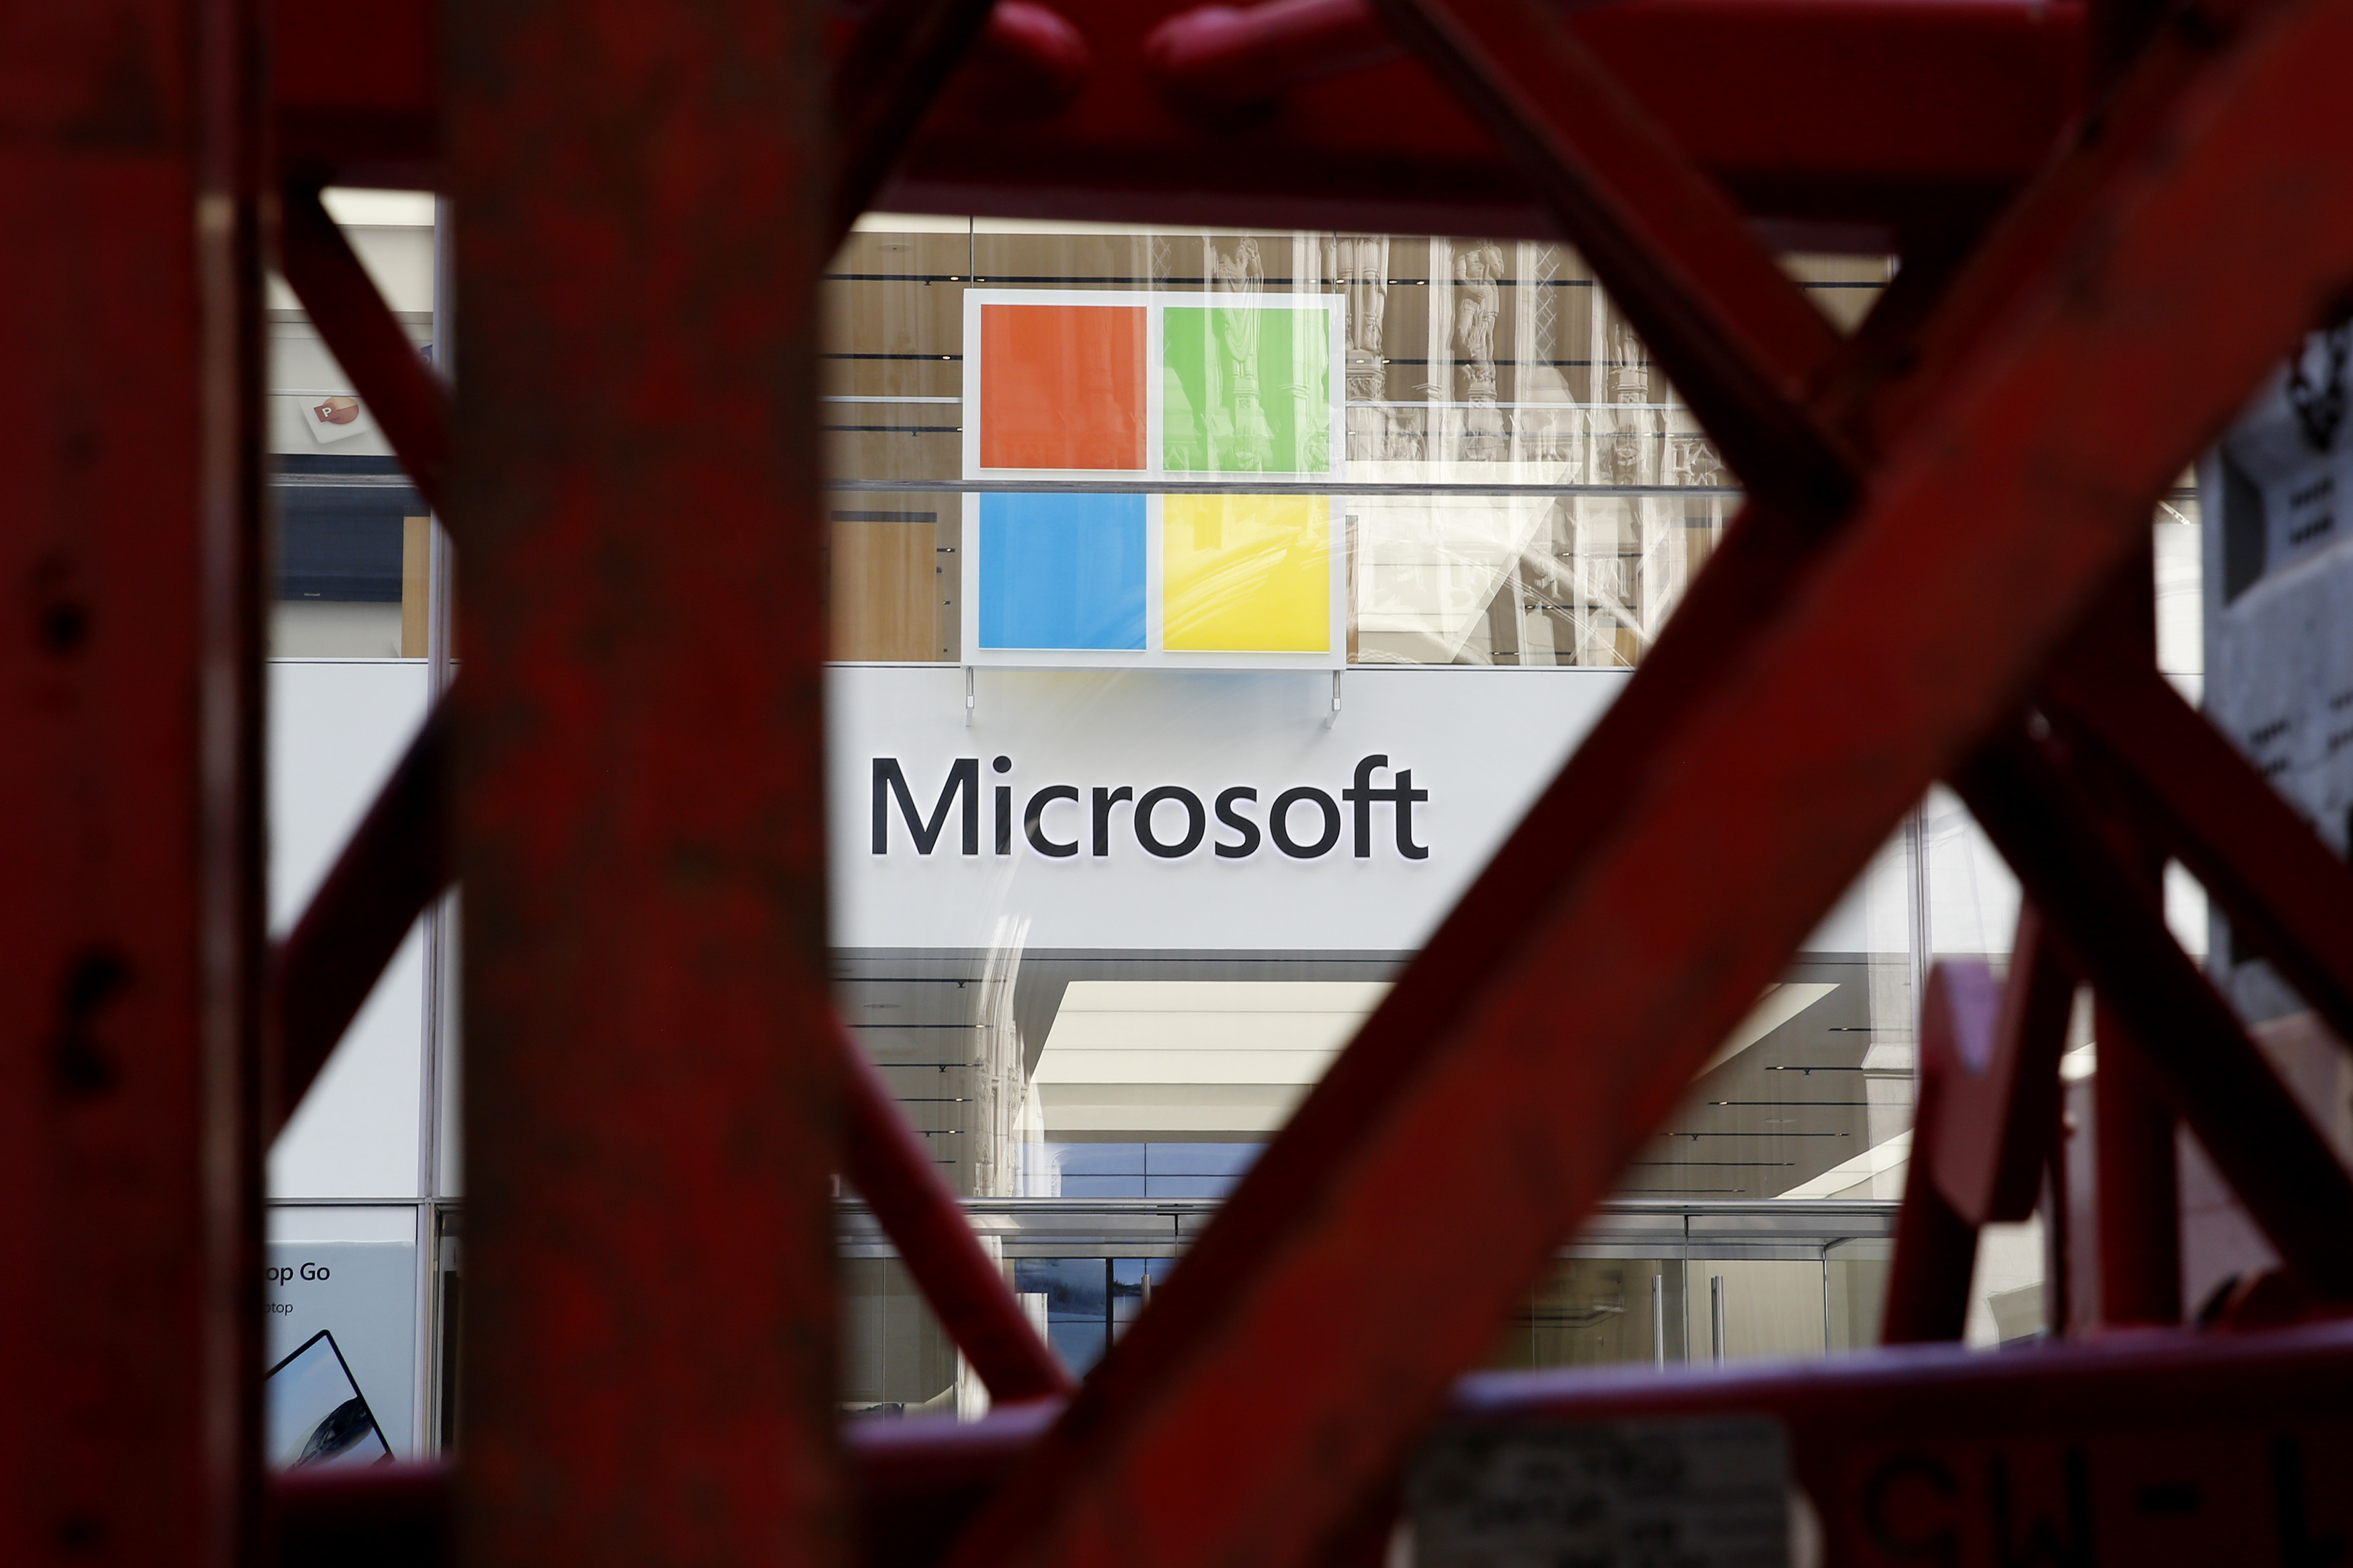 Microsoft logo seen through a gap in a red metal bridge